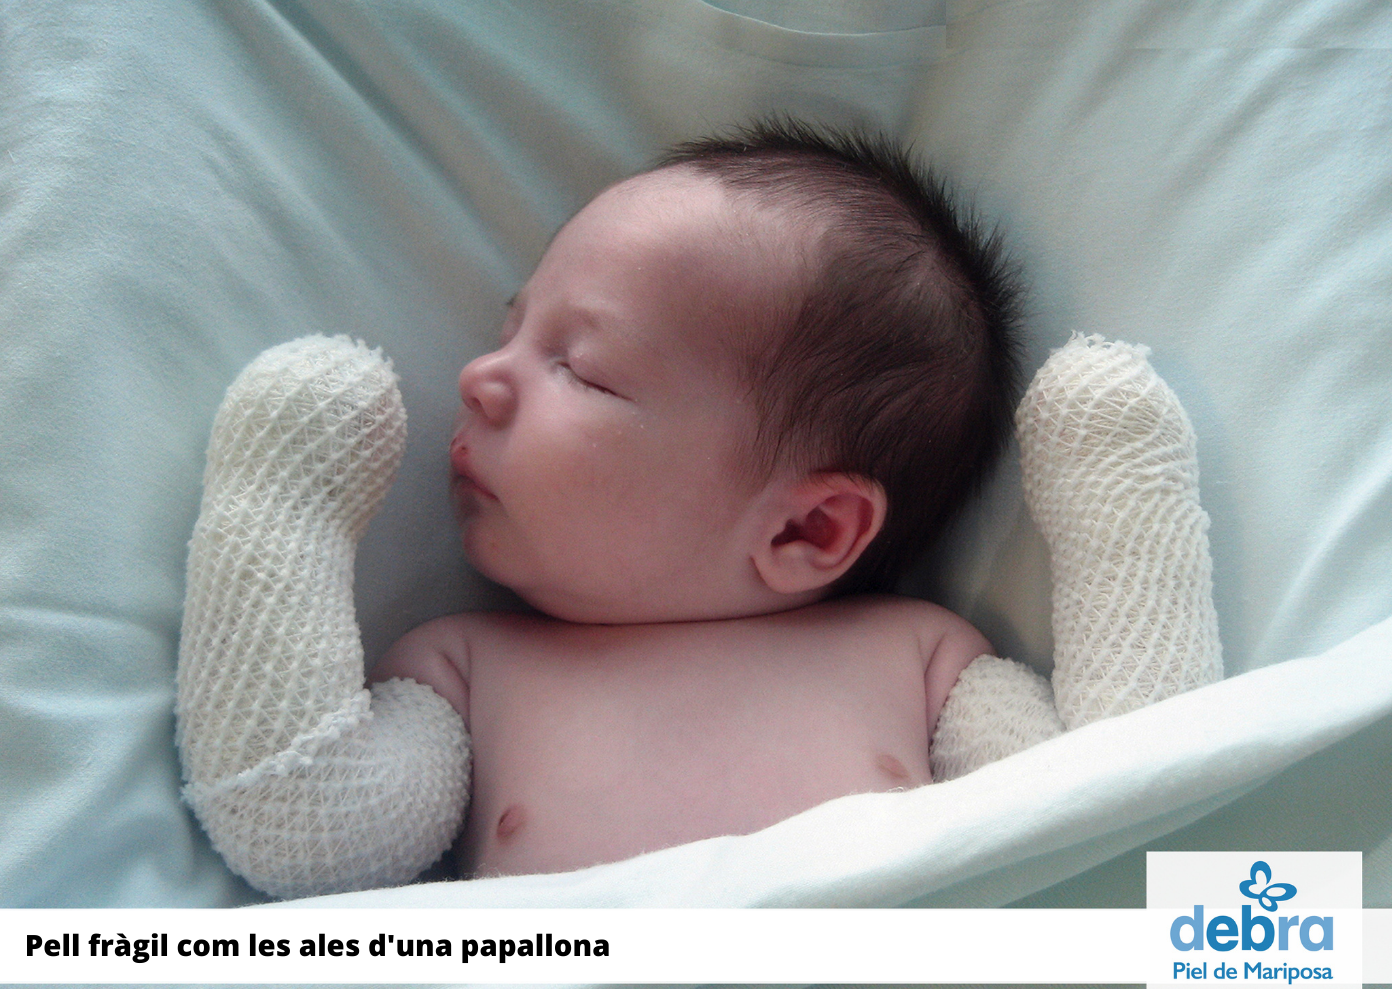 Peu de foto, logo de l’Associació DEBRA-PIEL de Mariposa. Fotografia d’un nadó al llit amb els dos braços embenats.